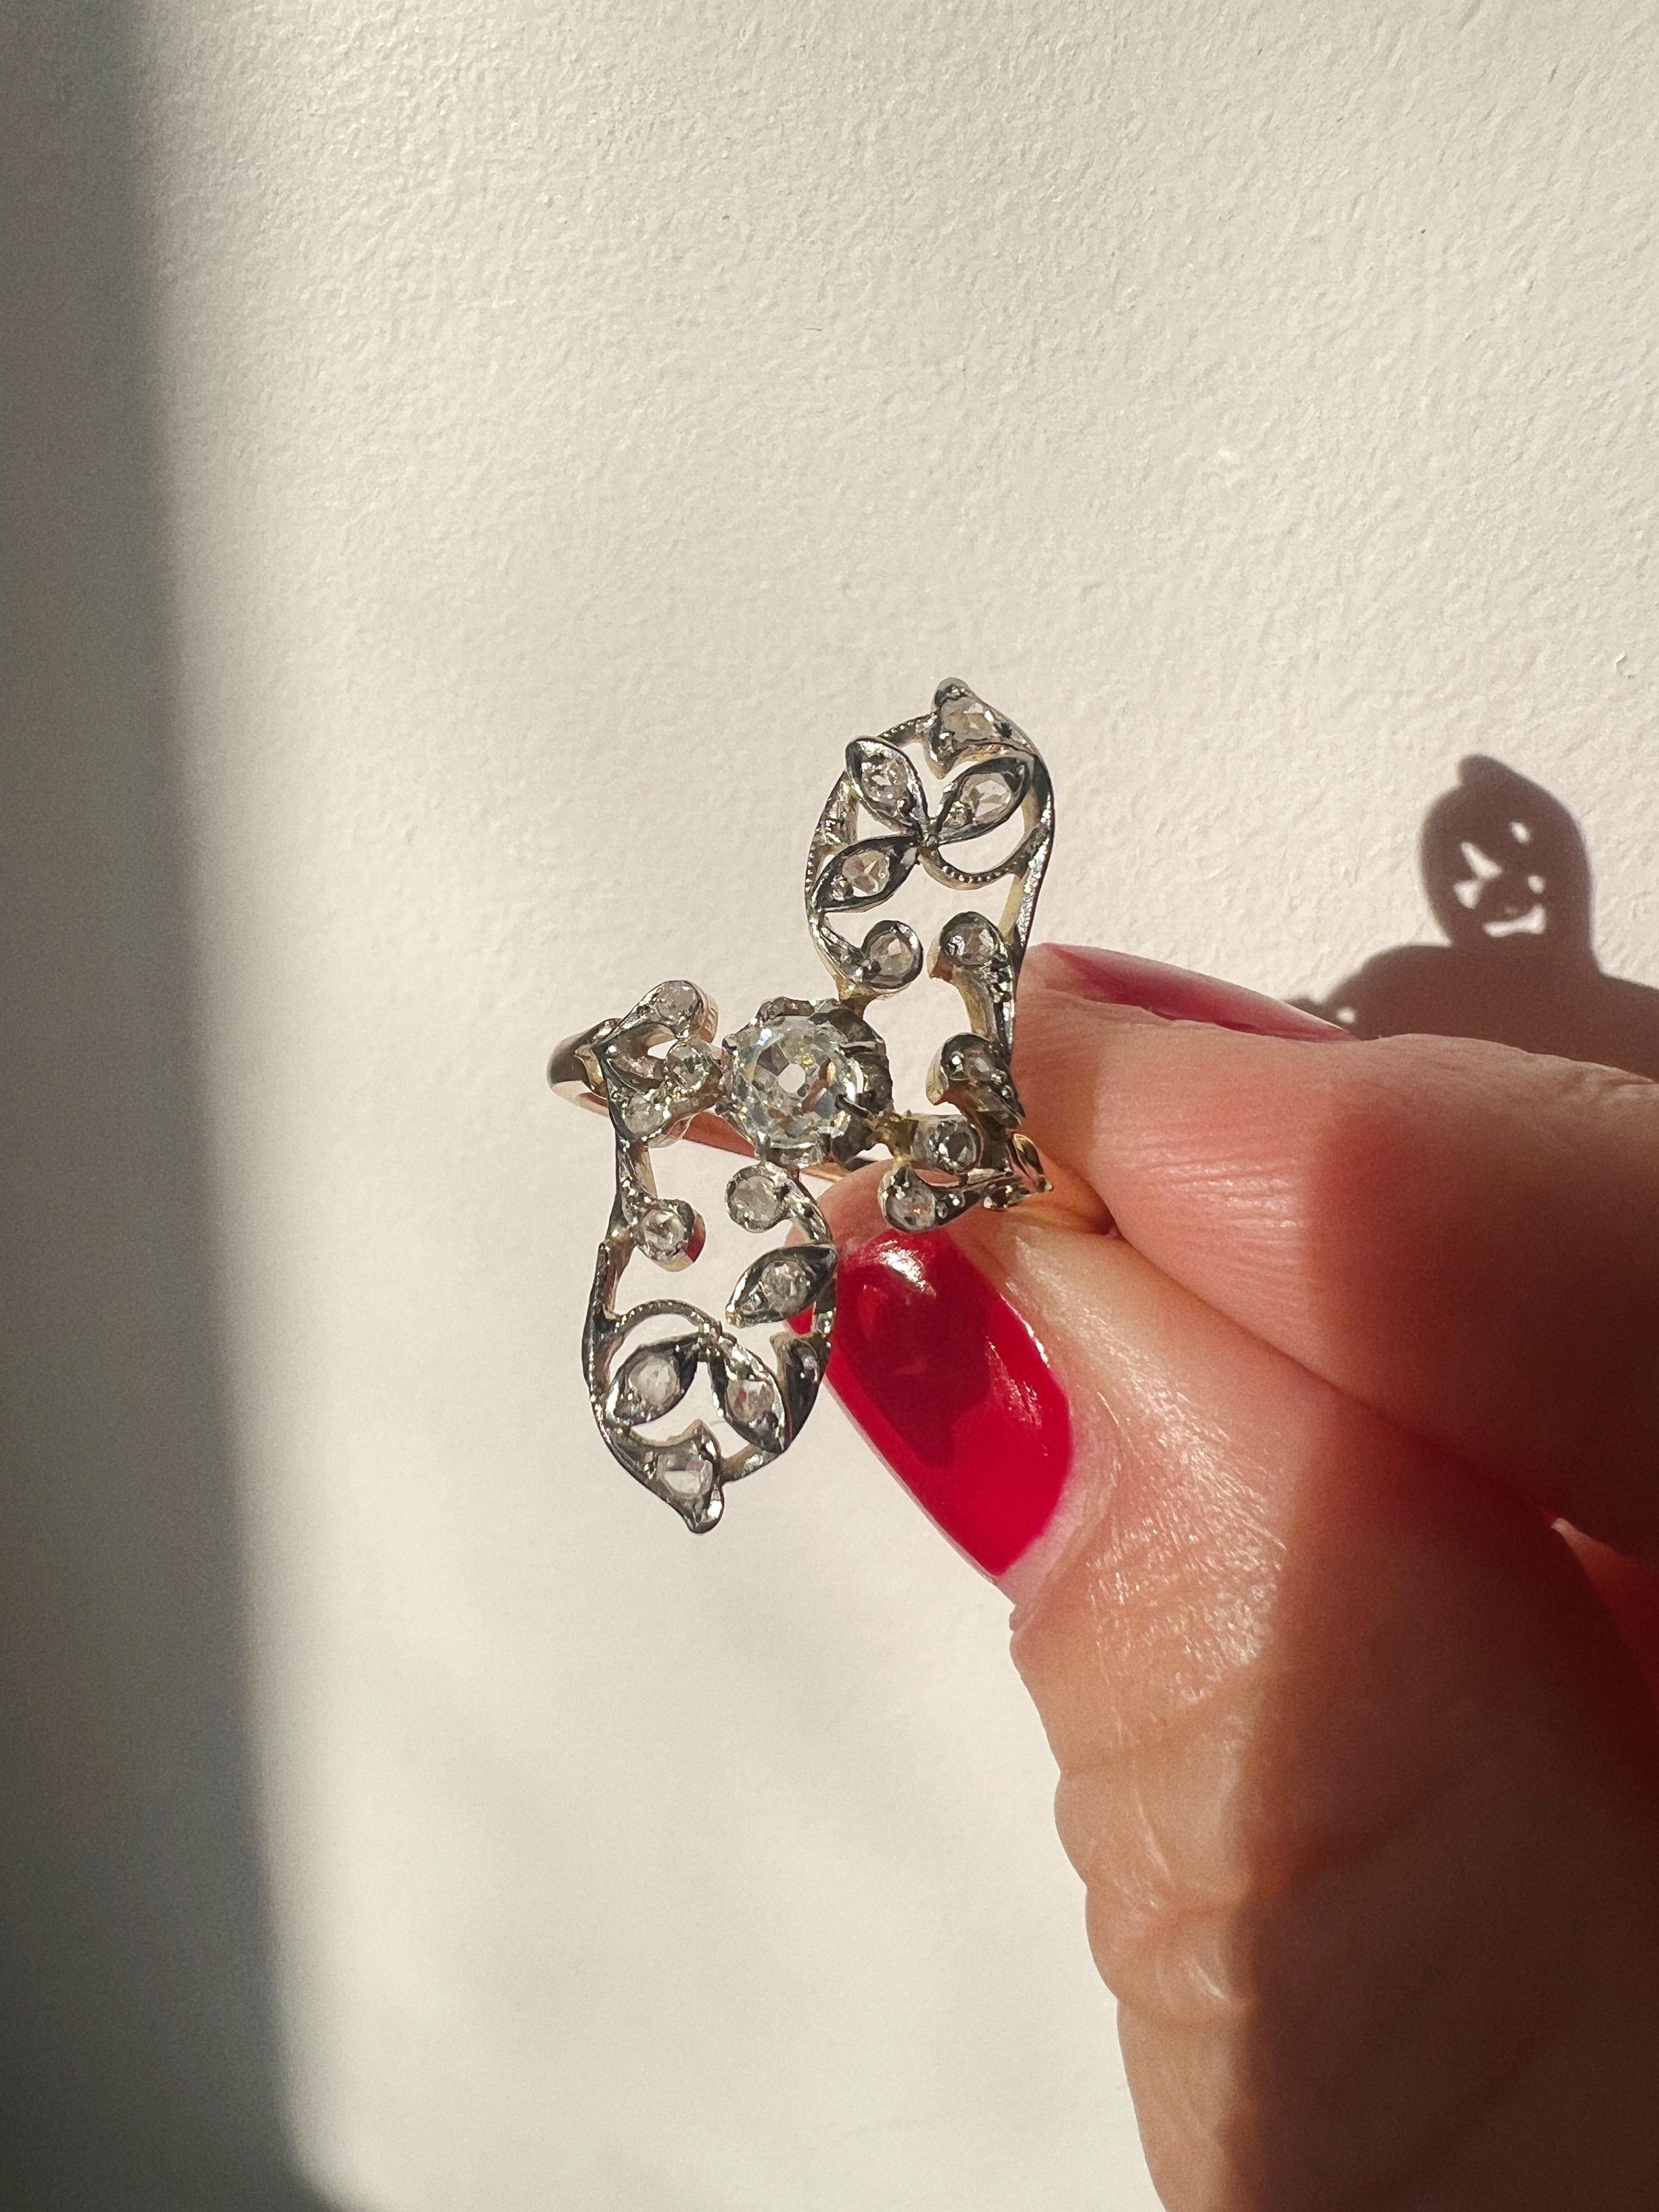 Taille vieille mine Bague marquise fleur en or 18k diamantée, époque Art Nouveau français